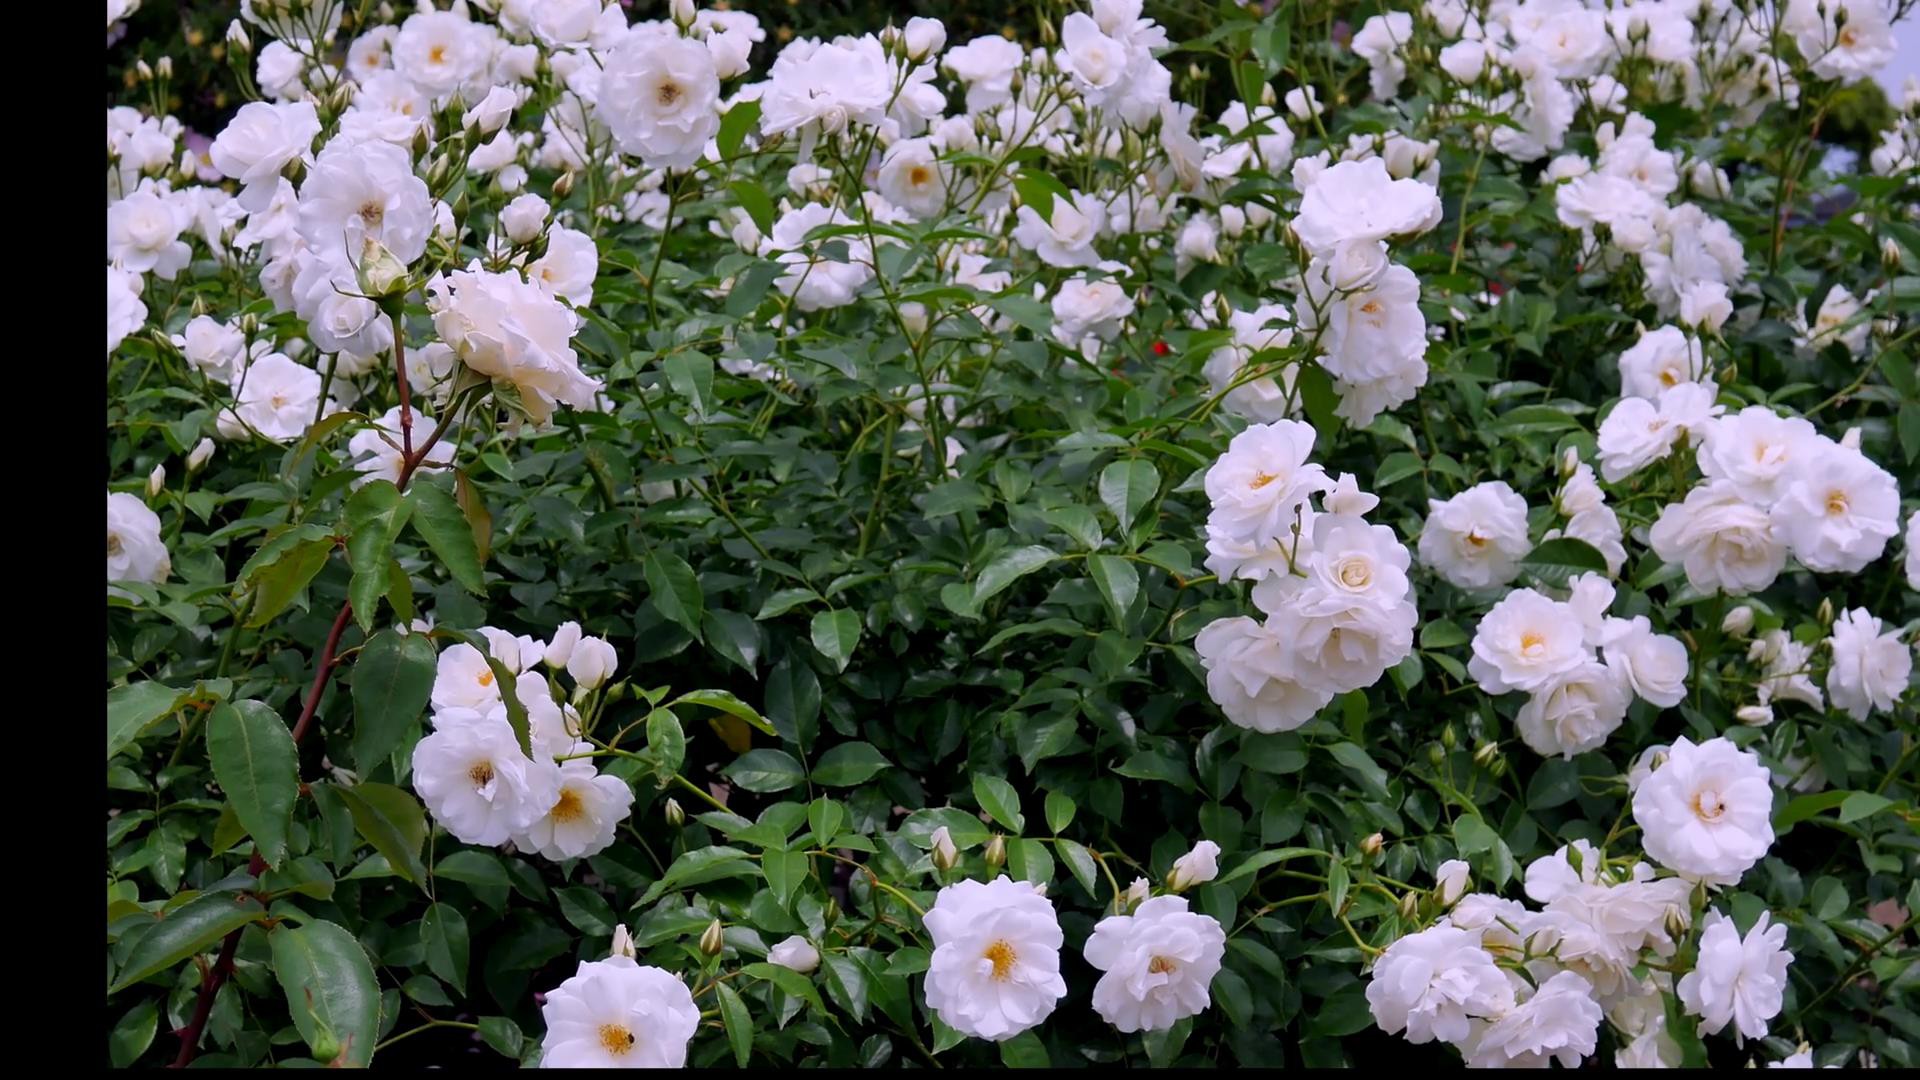 Đến thăm khu vườn trên đảo ở Nhật Bản với 2.600 cây hoa hồng rung rinh trước gió đẹp mê mẩn lòng người - Ảnh 13.